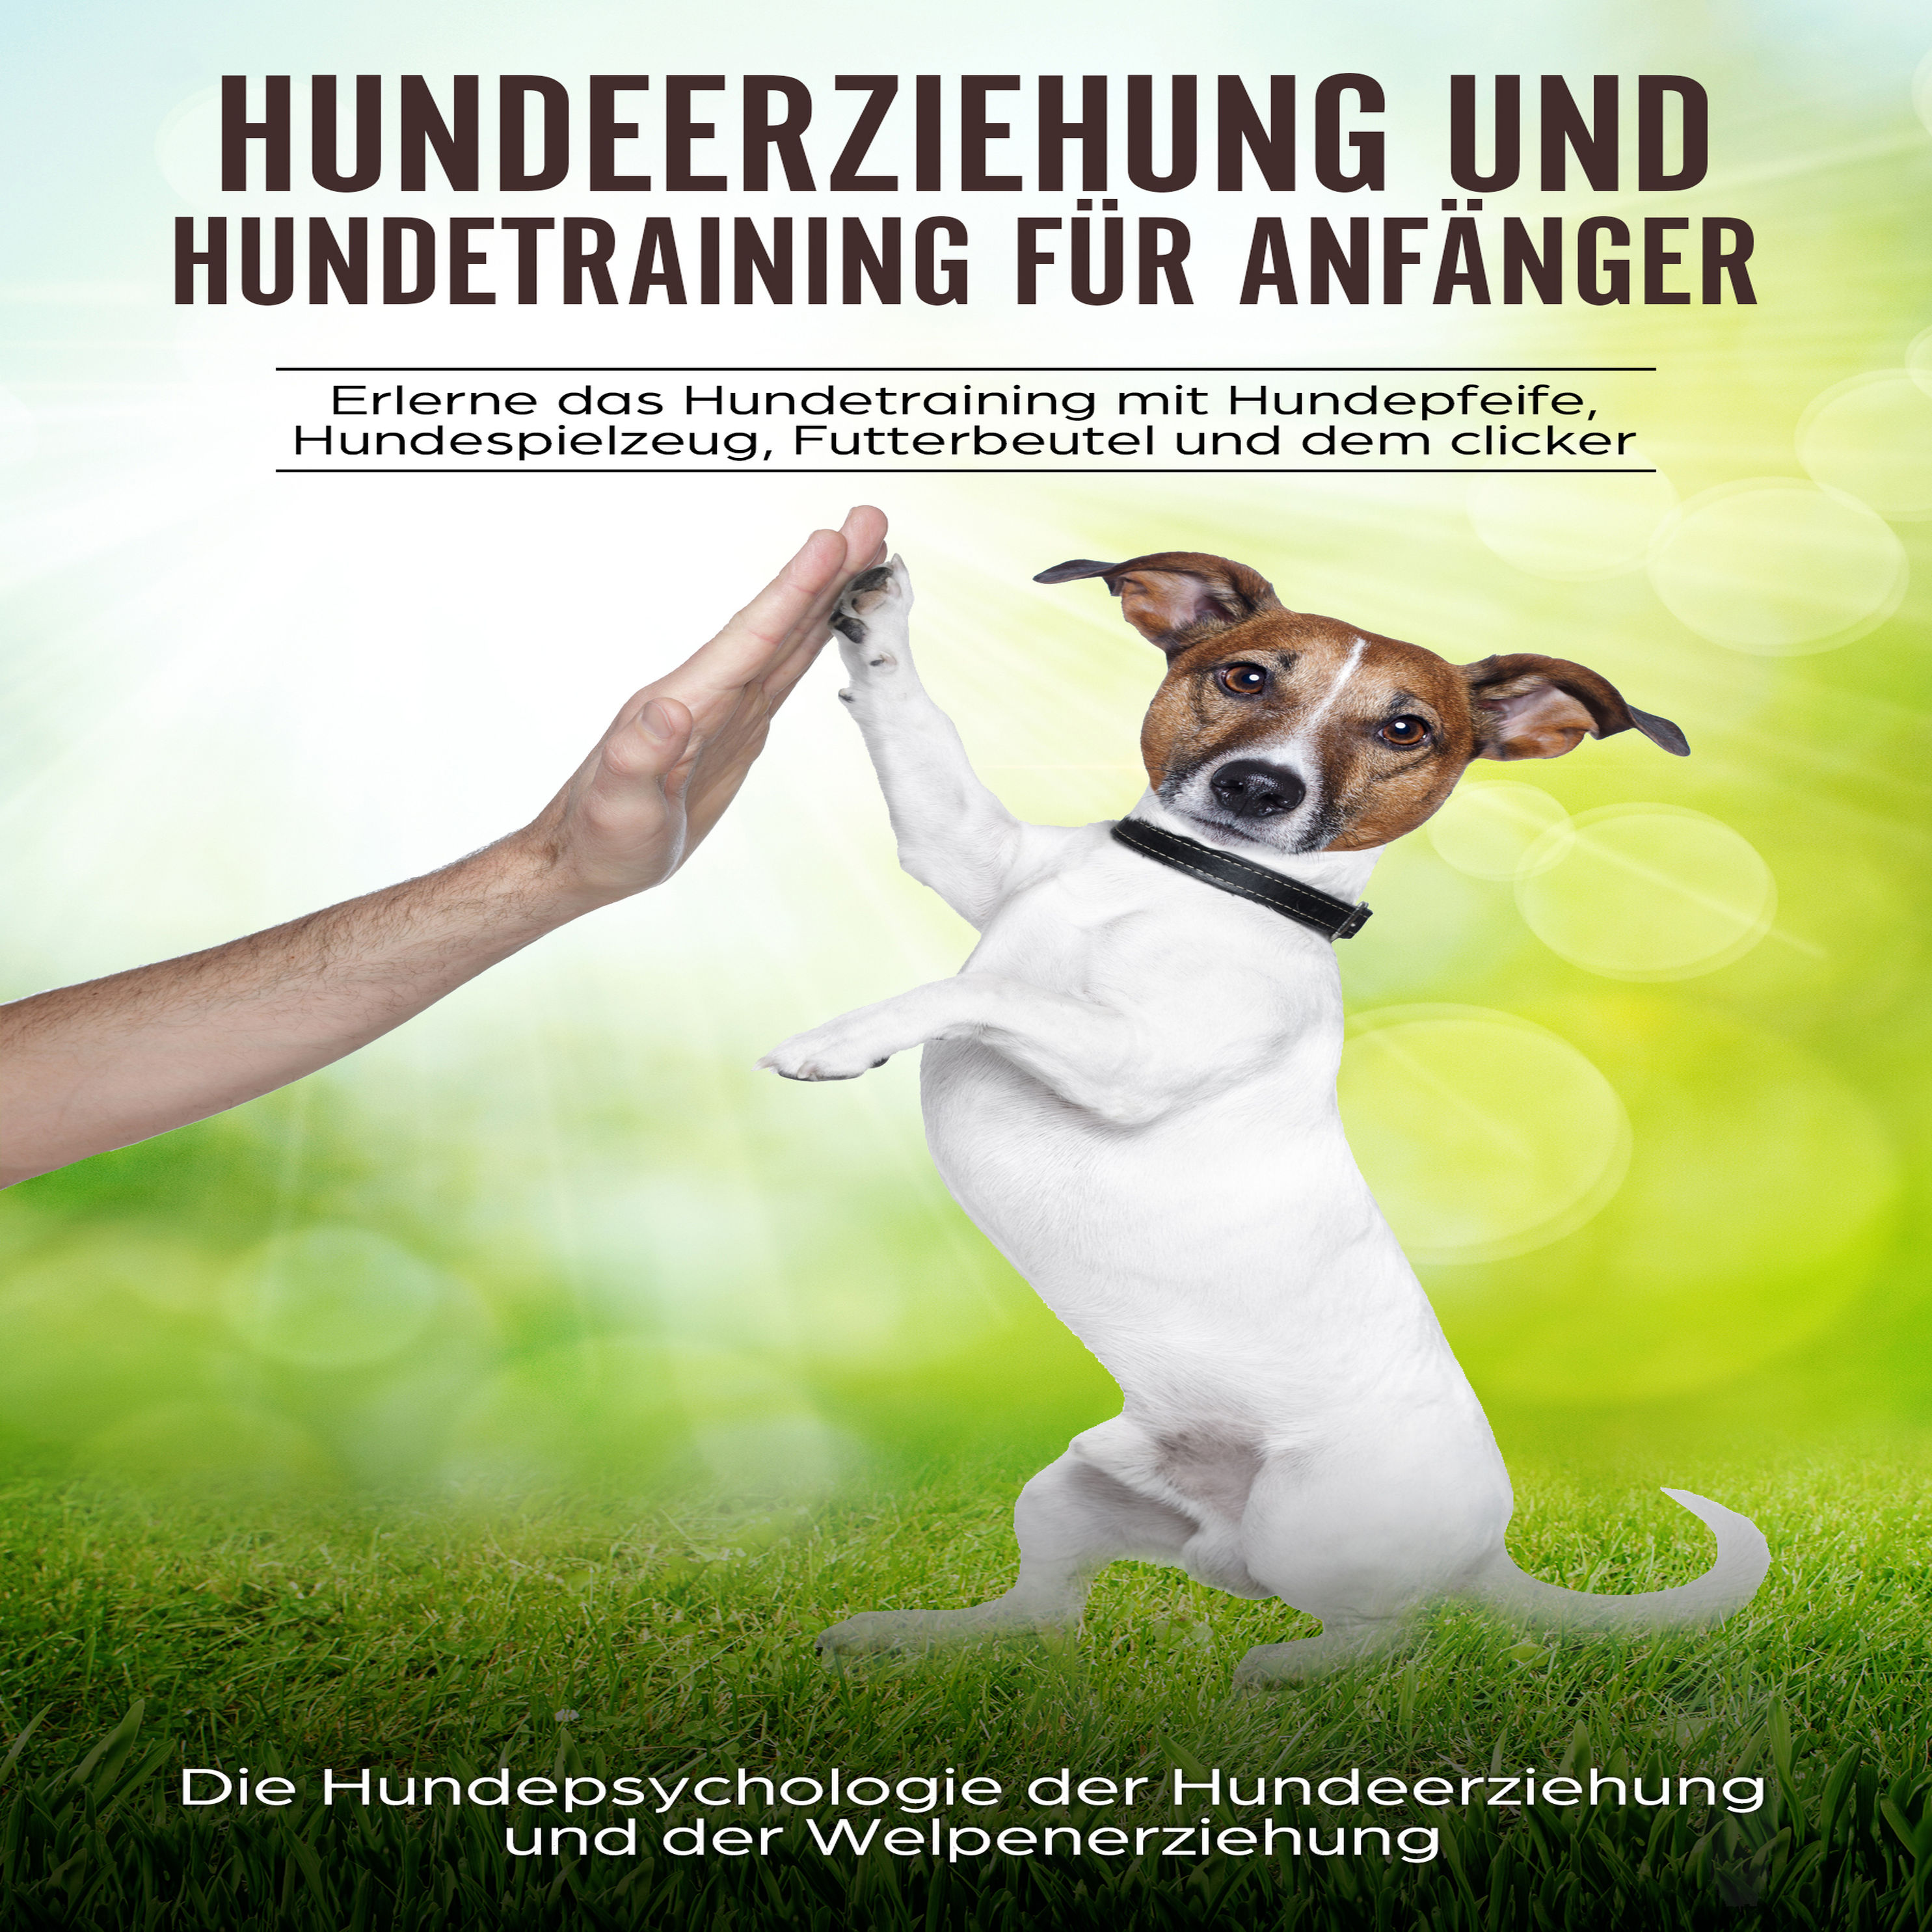 Hundeerziehung und Hundetraining für Anfänger Hörbuch Download